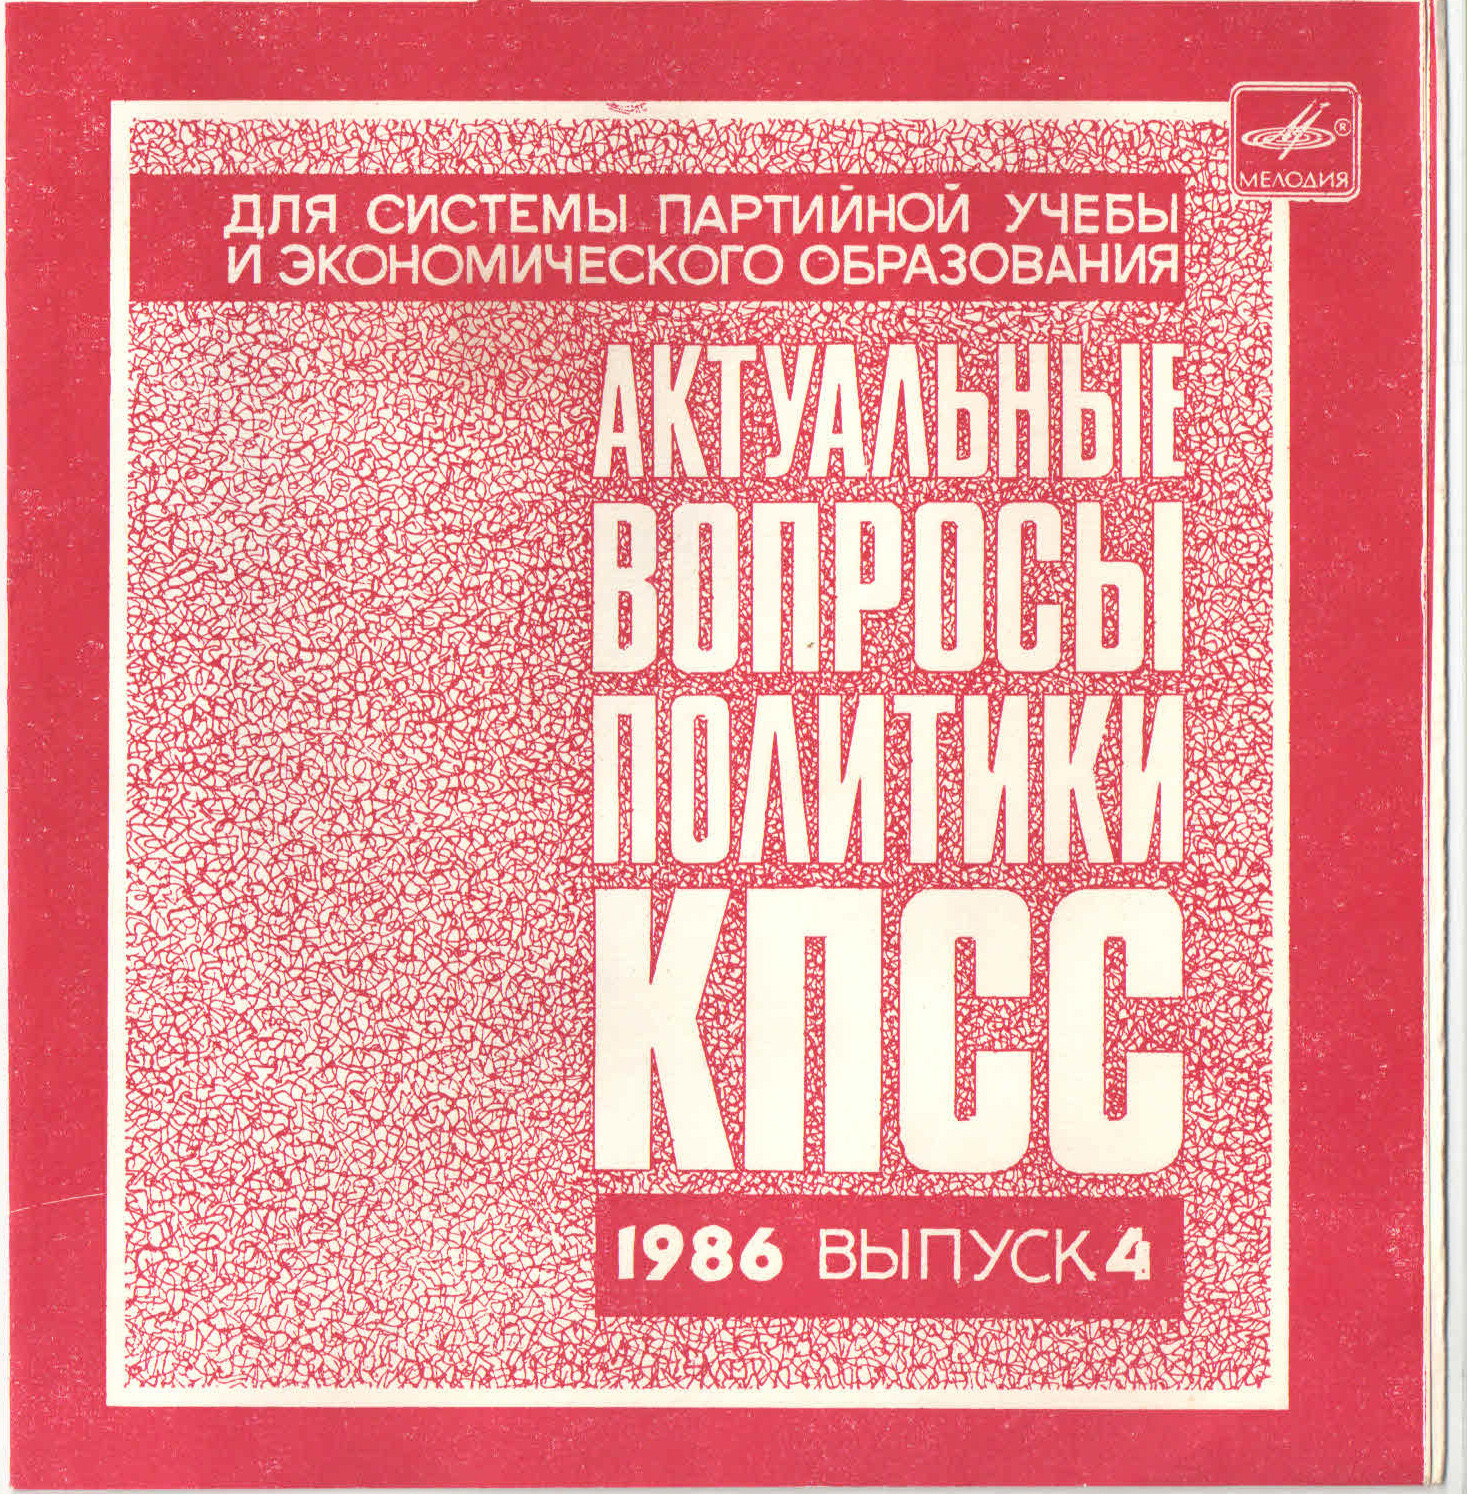 Актуальные вопросы политики КПСС. 1986. Выпуск 4